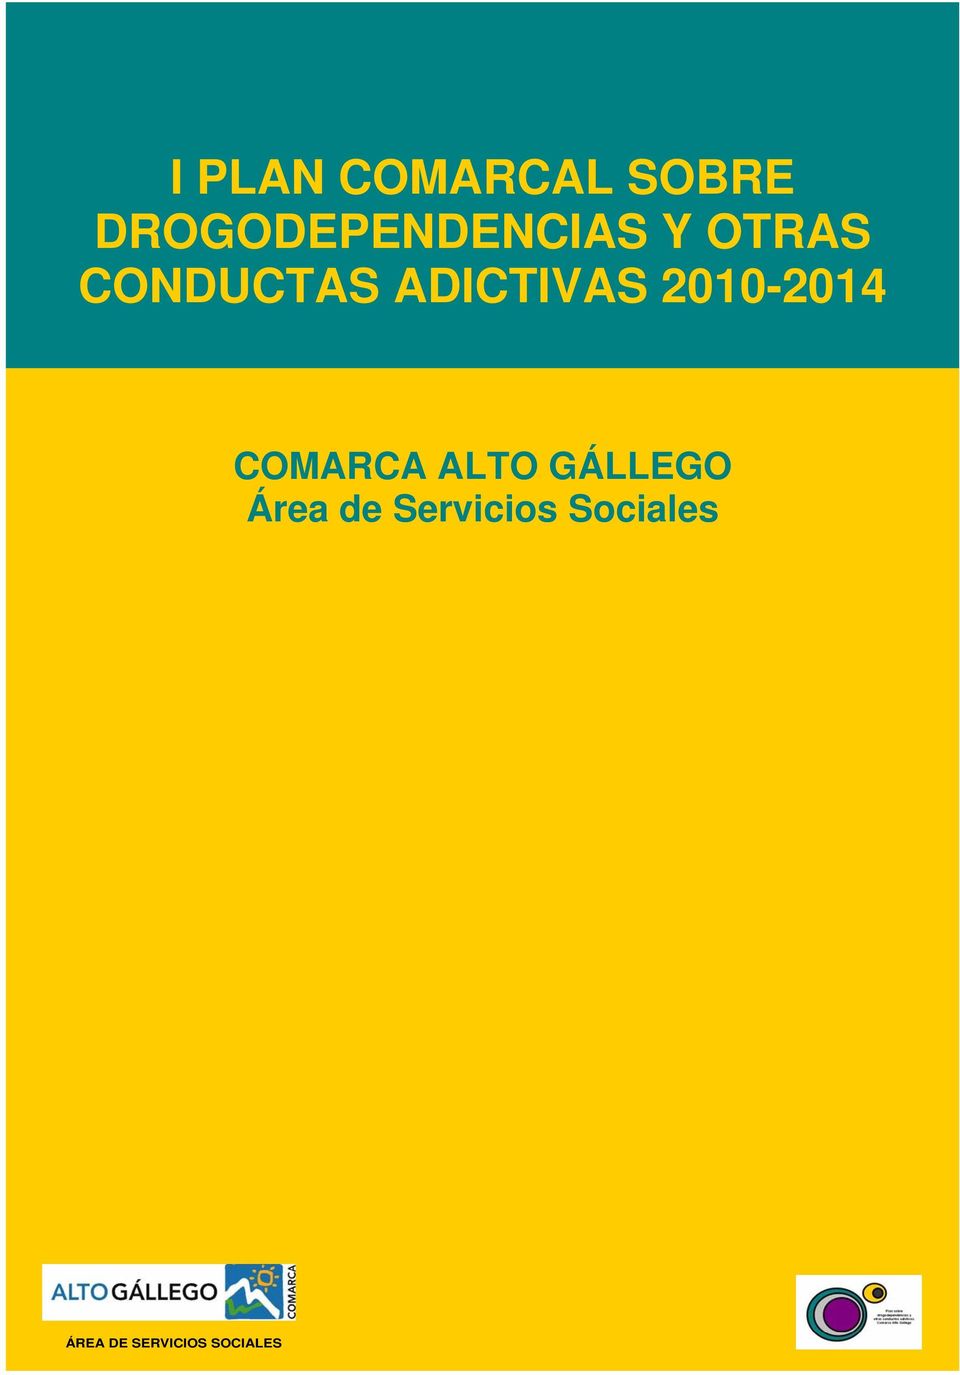 ADICTIVAS 2010-2014 COMARCA ALTO